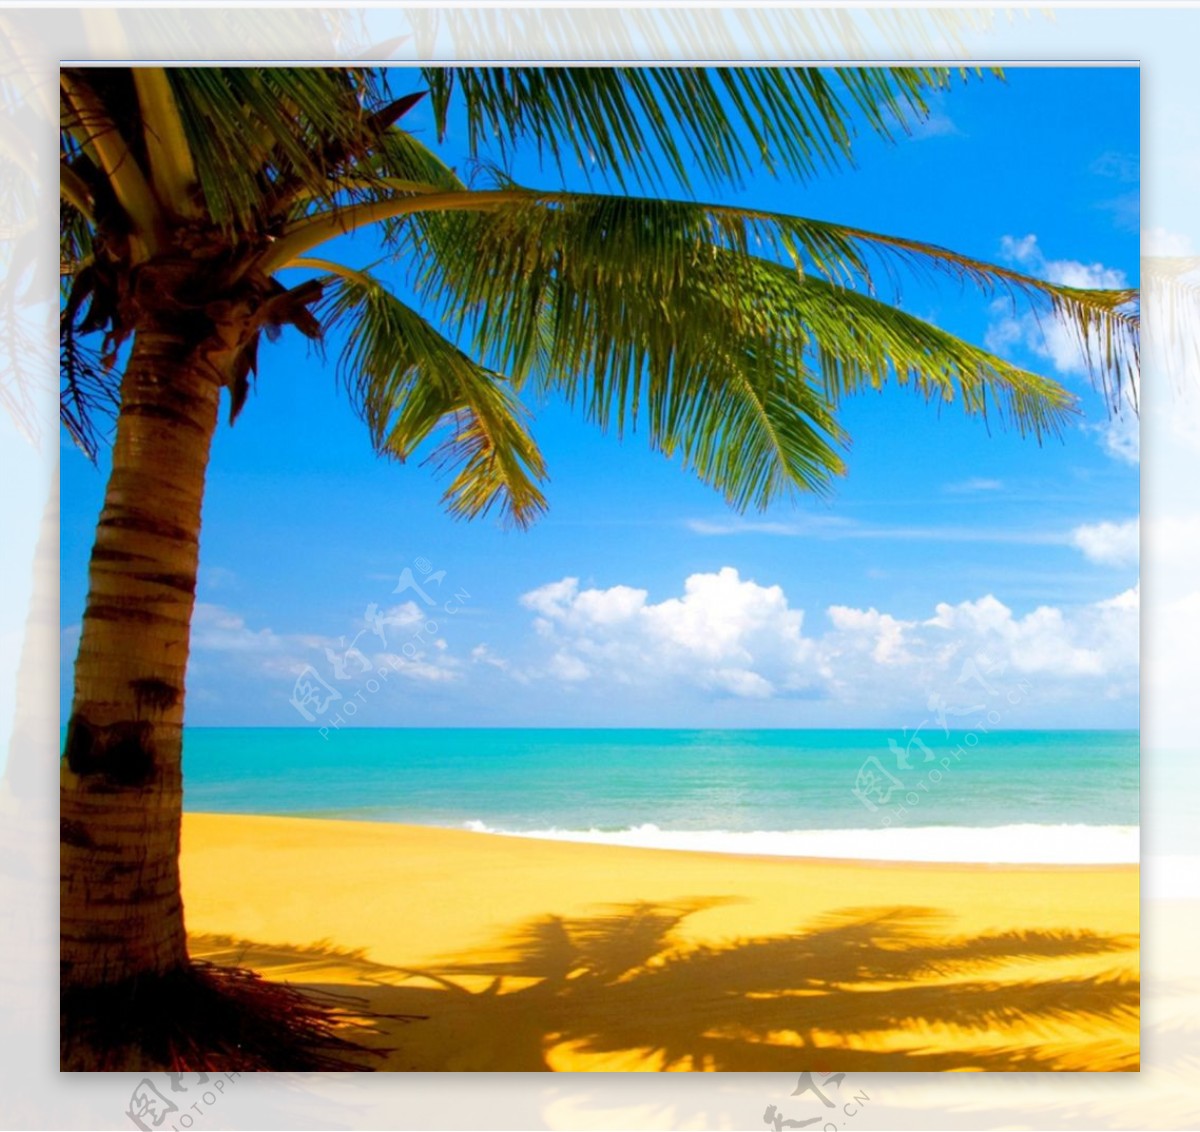 沙滩阳光椰子树